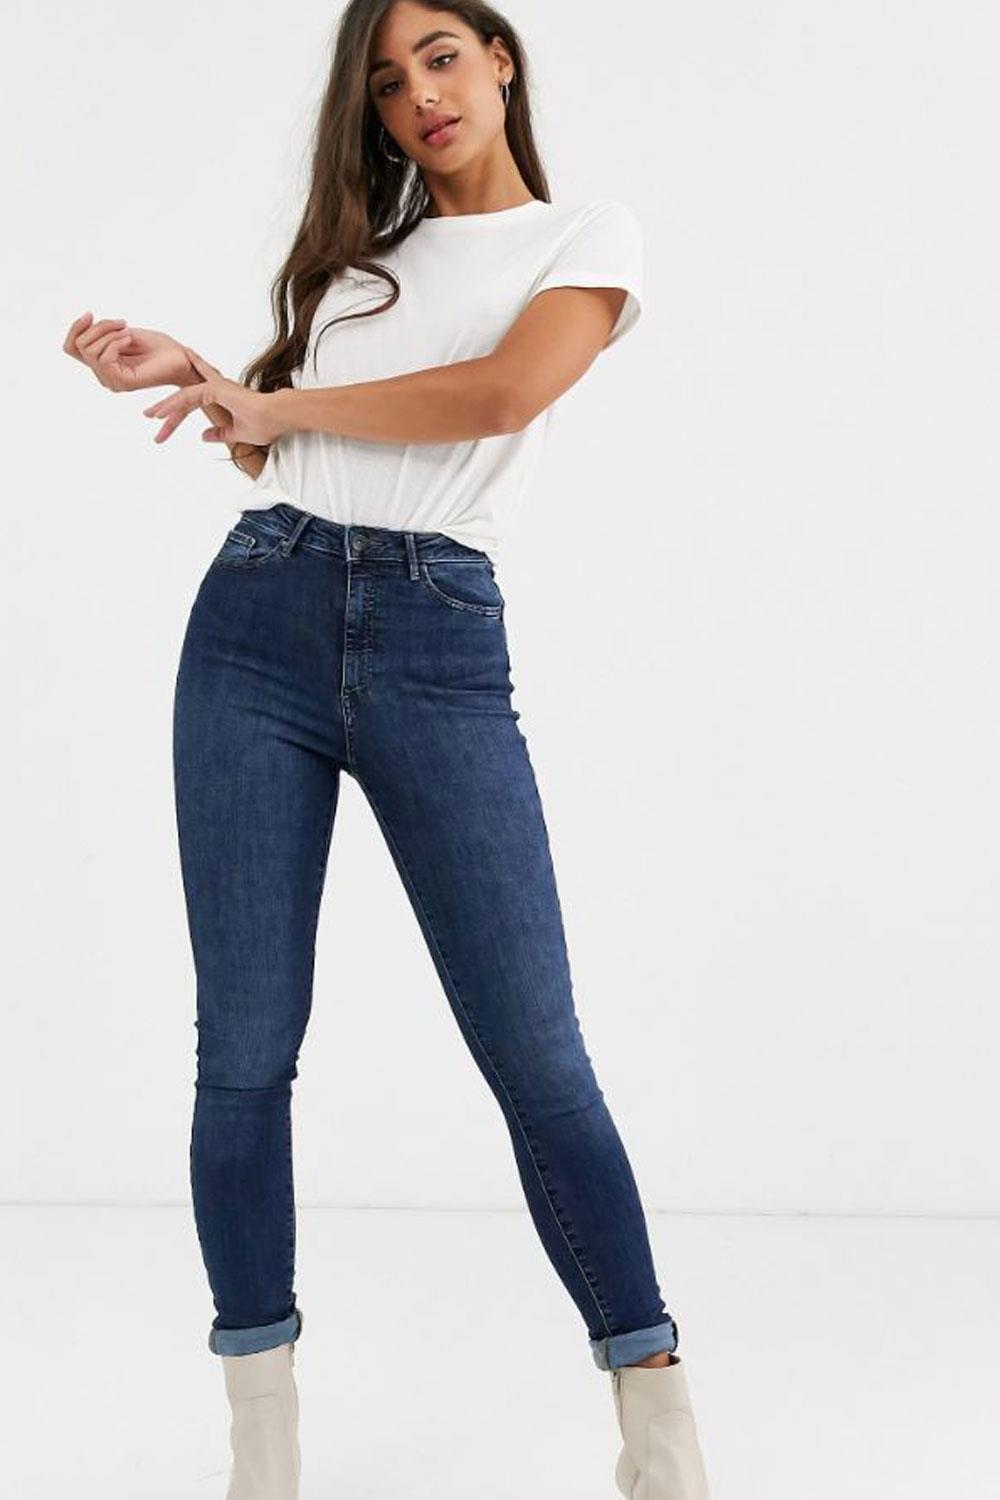 jeans low cost pantalones vaqueros Shape Up de Vero Moda Tall, 37,99€